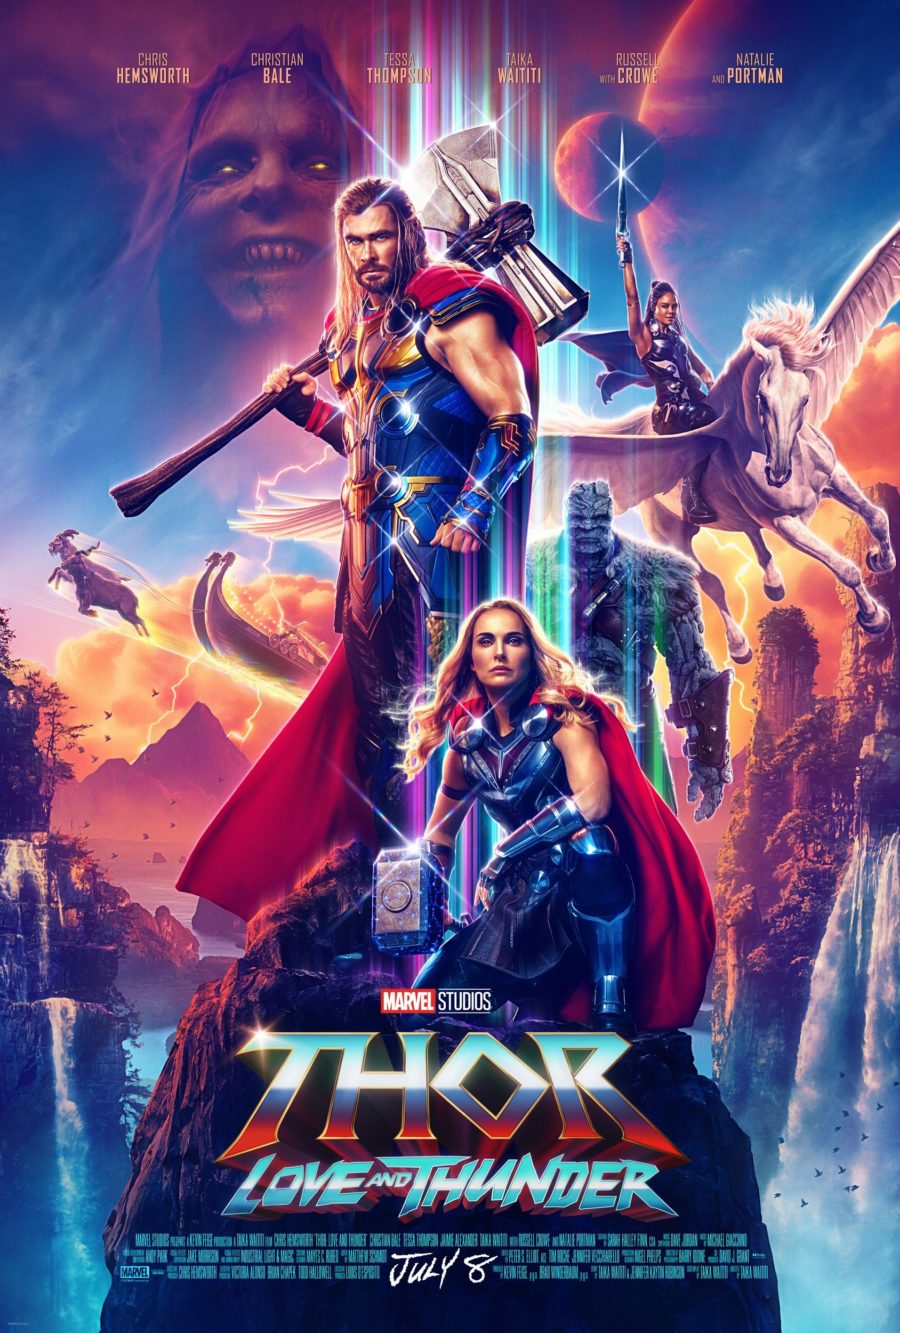 Plakat zu Thor: Love and Thunder